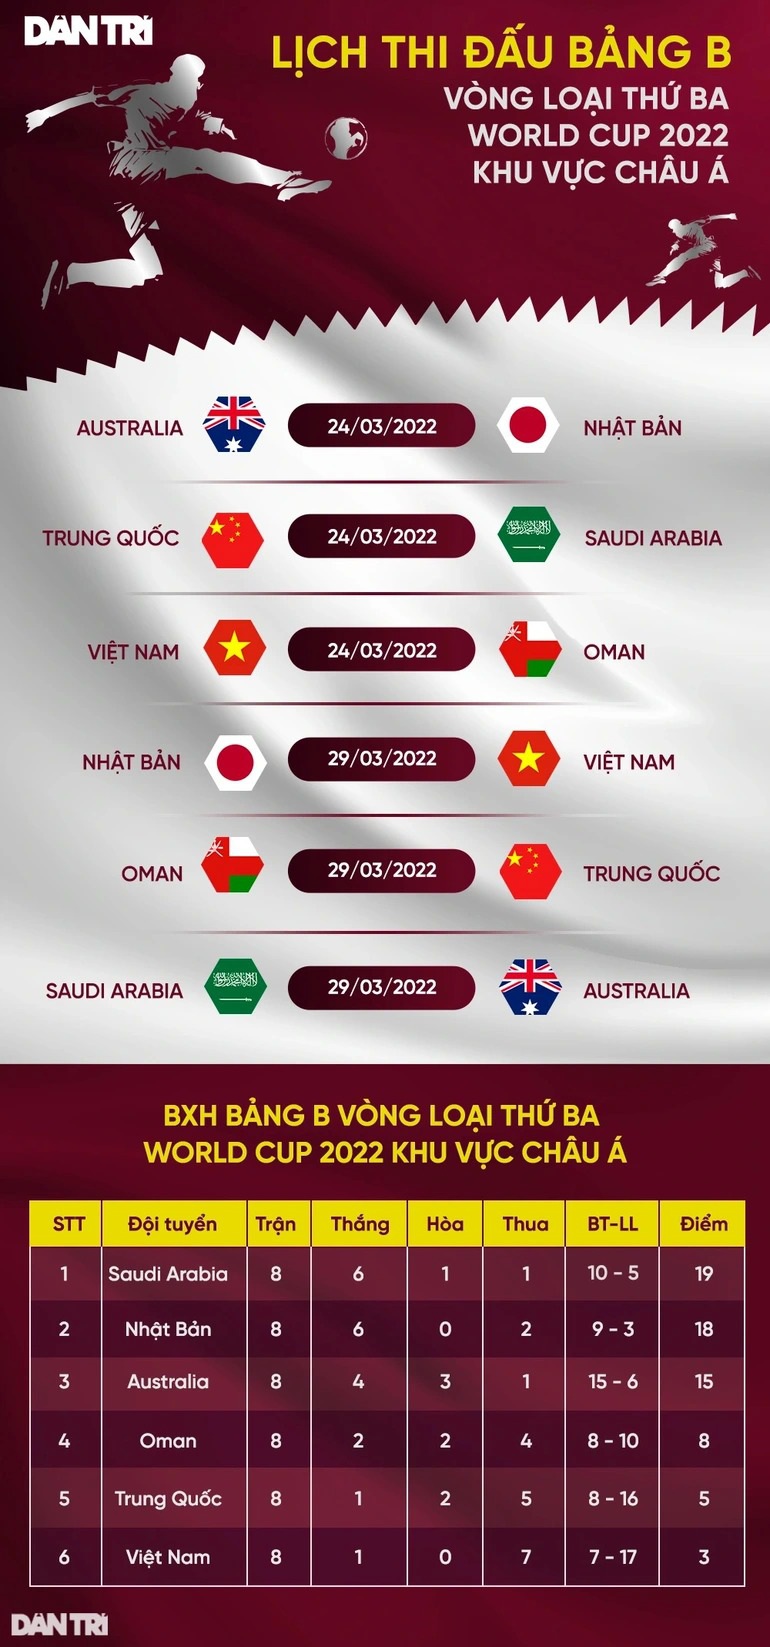 Vé trận đội tuyển Việt Nam - Oman cao nhất là 1,2 triệu đồng - 2